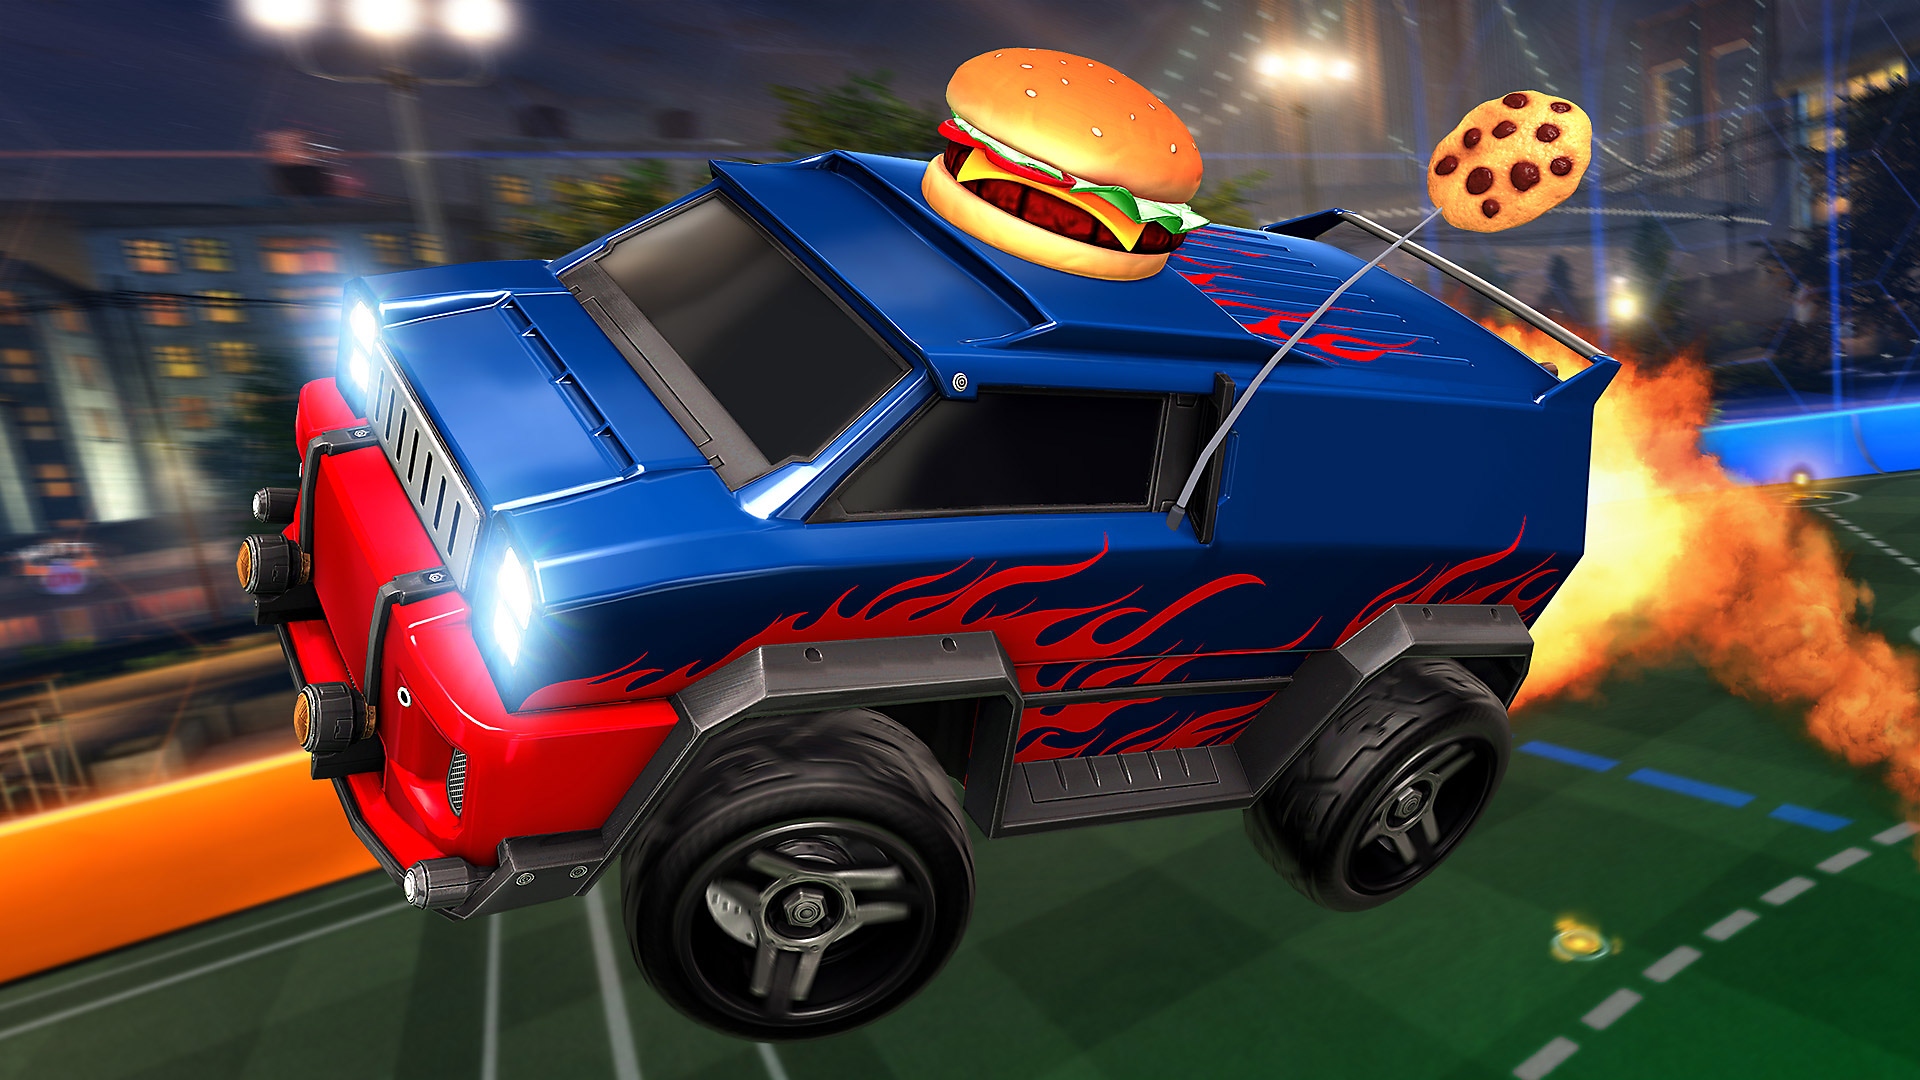 Rocket League – snímek obrazovky zobrazující modročervenou dodávku s hamburgerem na střeše